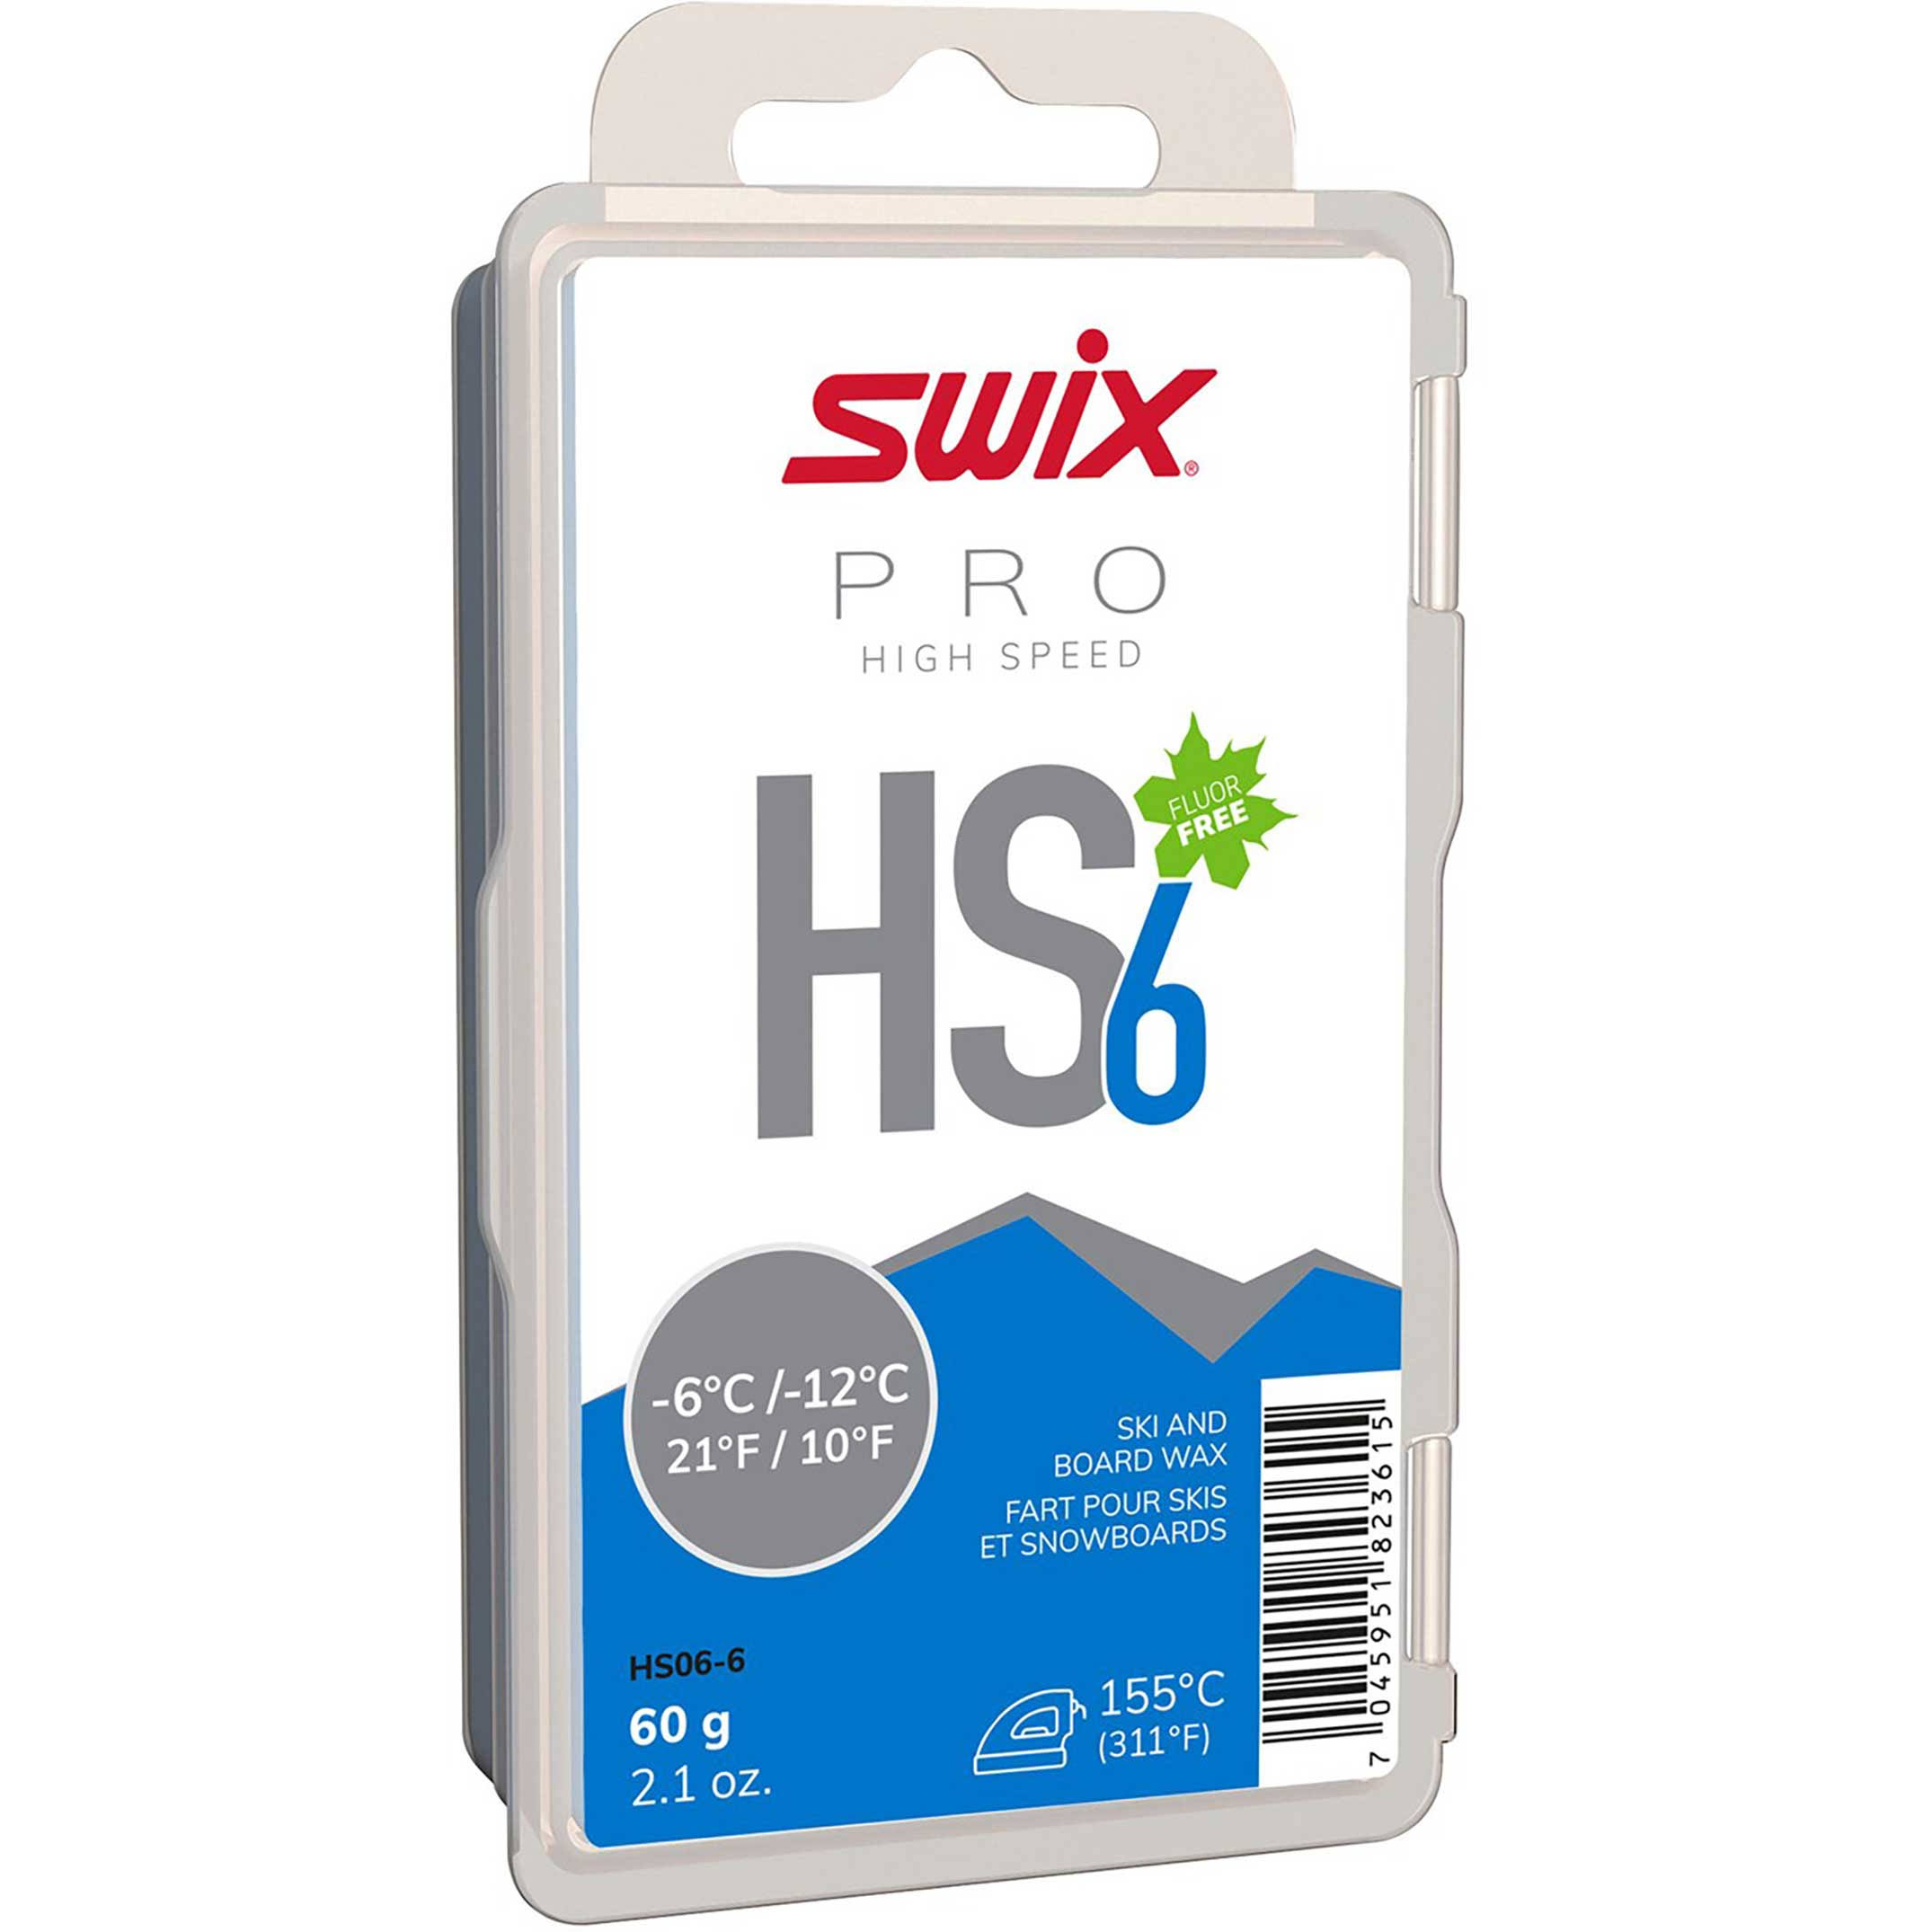 Swix HS6 60 G Hot Wax Blue